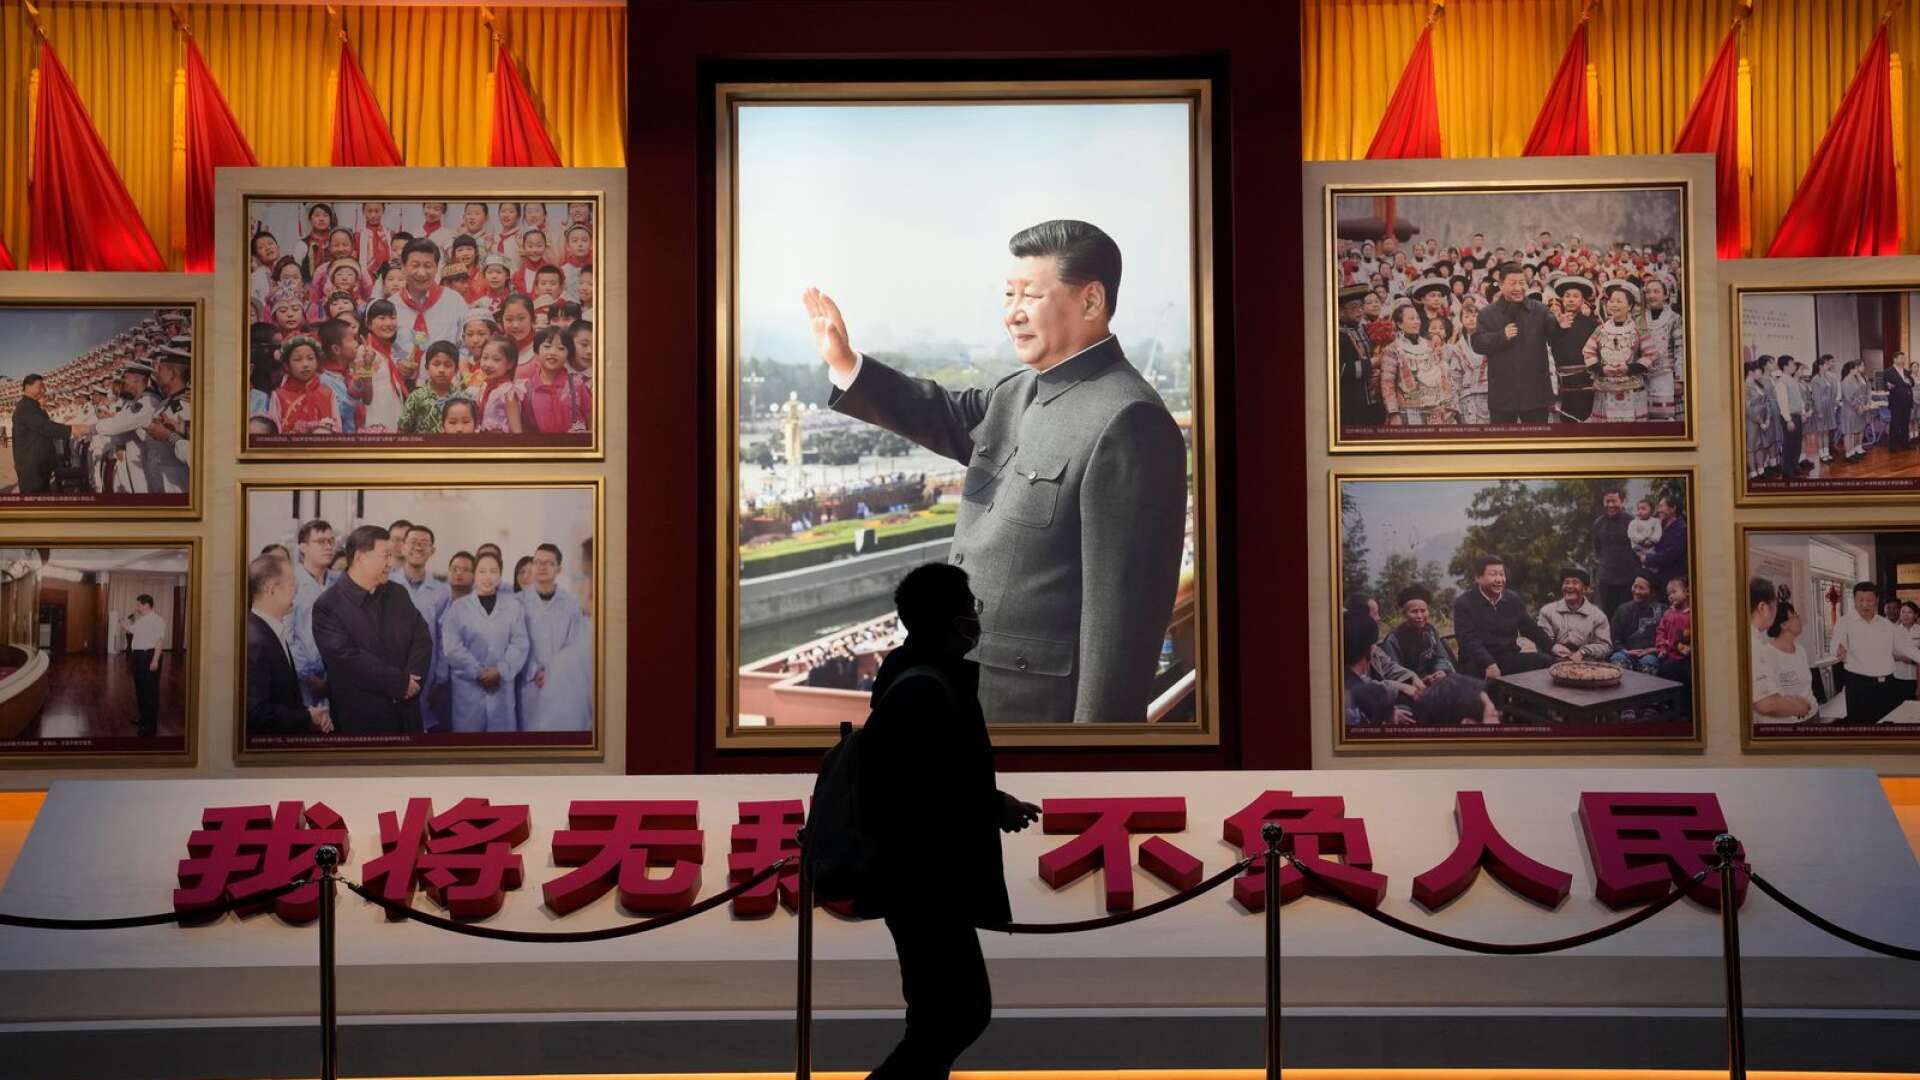 Xi däremot valdes bort eftersom det är ett vanligt kinesiskt efternamn, som framför allt bärs av Kinas president, Xi Jinping, skriver Byrån.